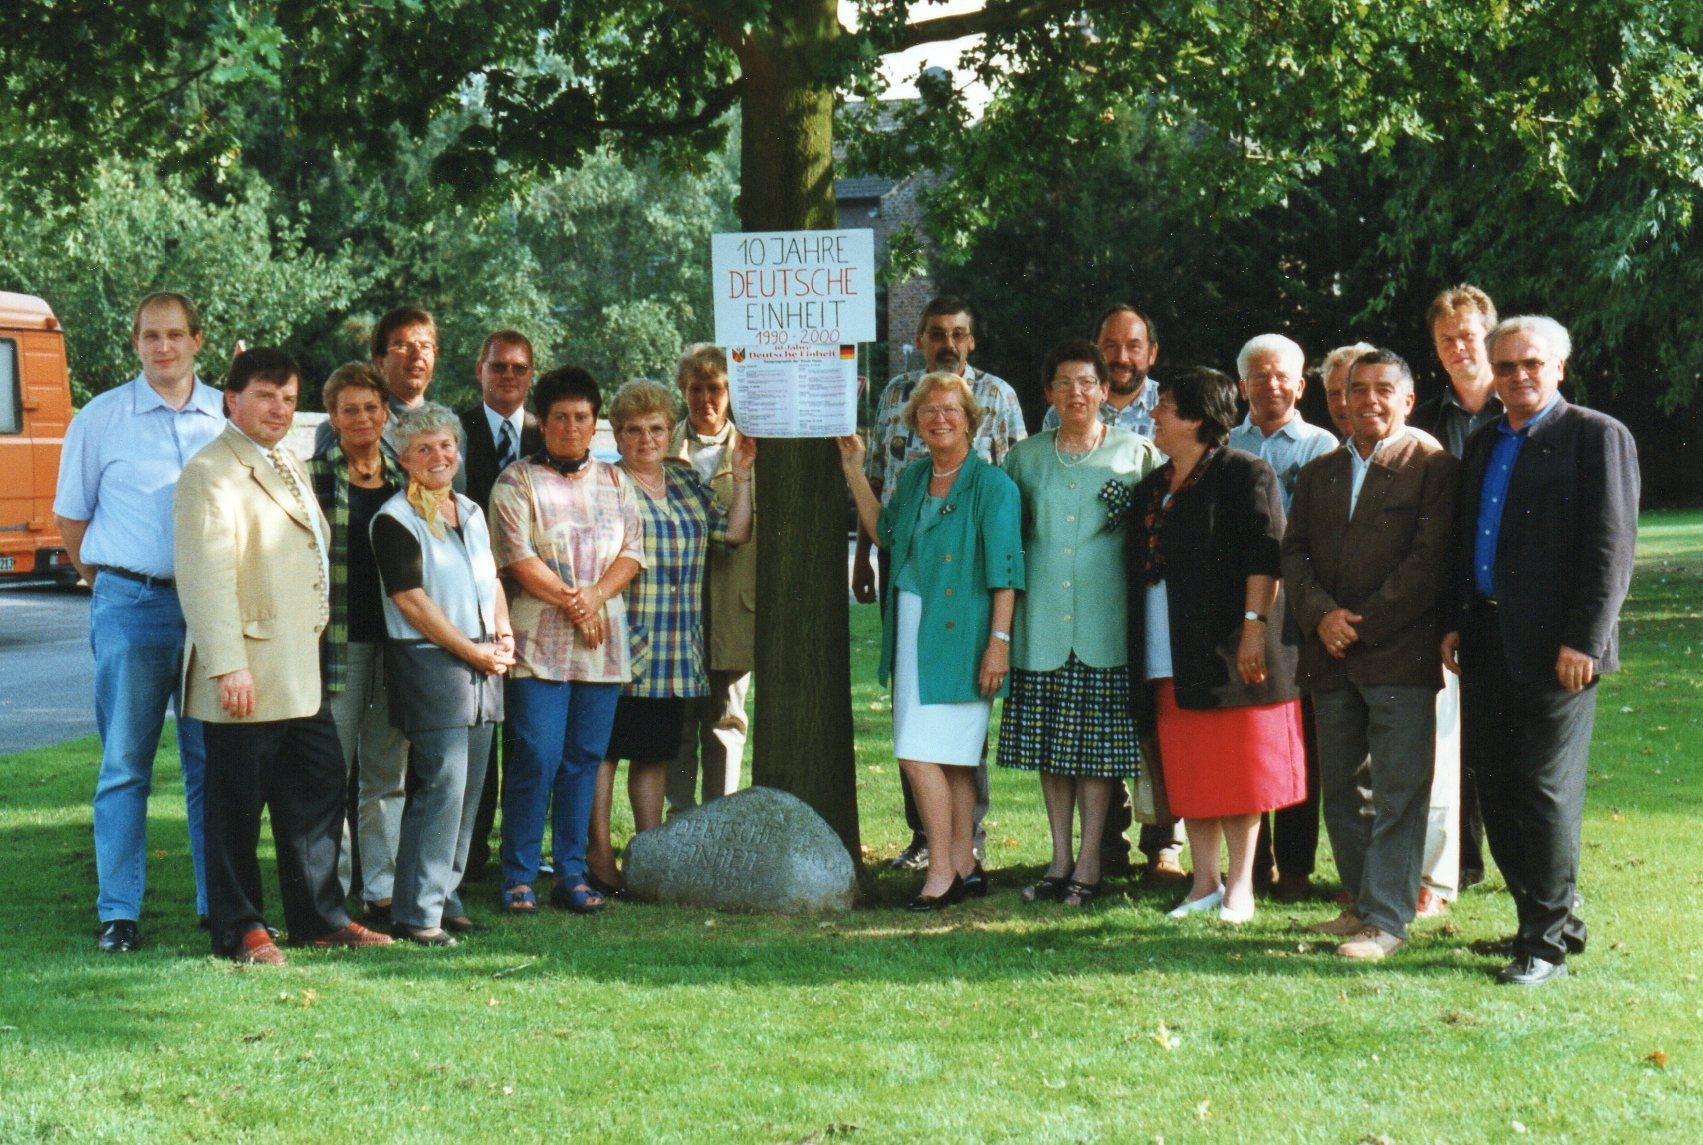 Erkelenzer mit Gästen aus Thum anlässlich des 10. Jahrestages der Deutschen Einheit